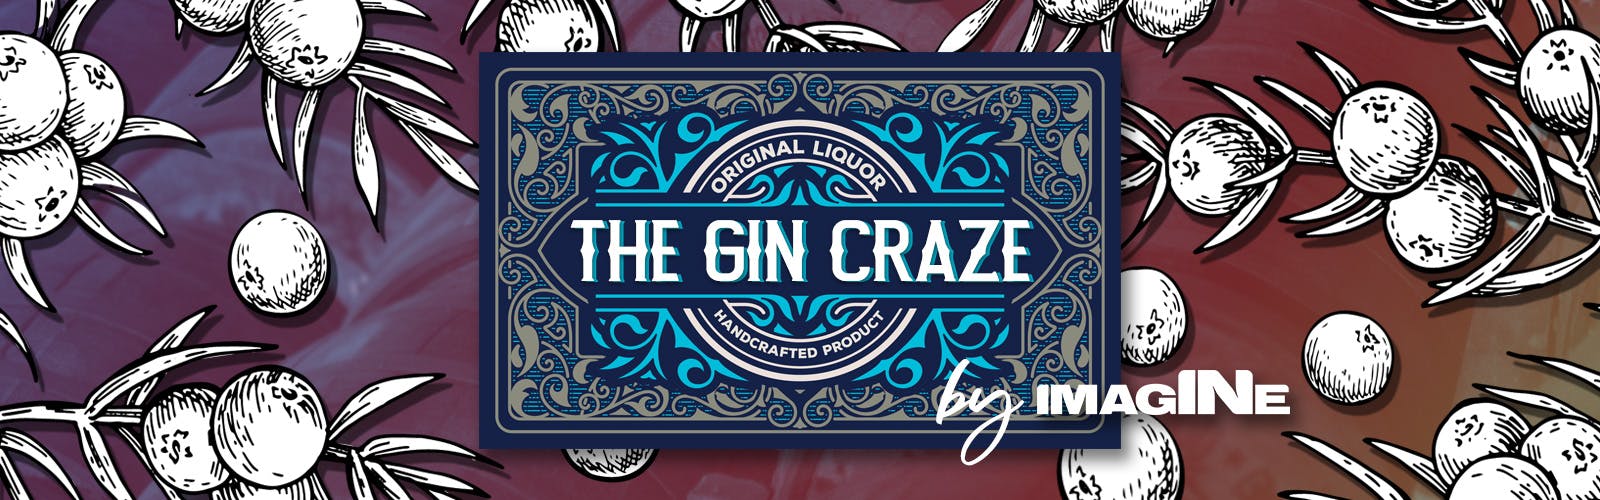 A experiência Gin Craze em Londres com Gin Palace e passeio pela destilaria